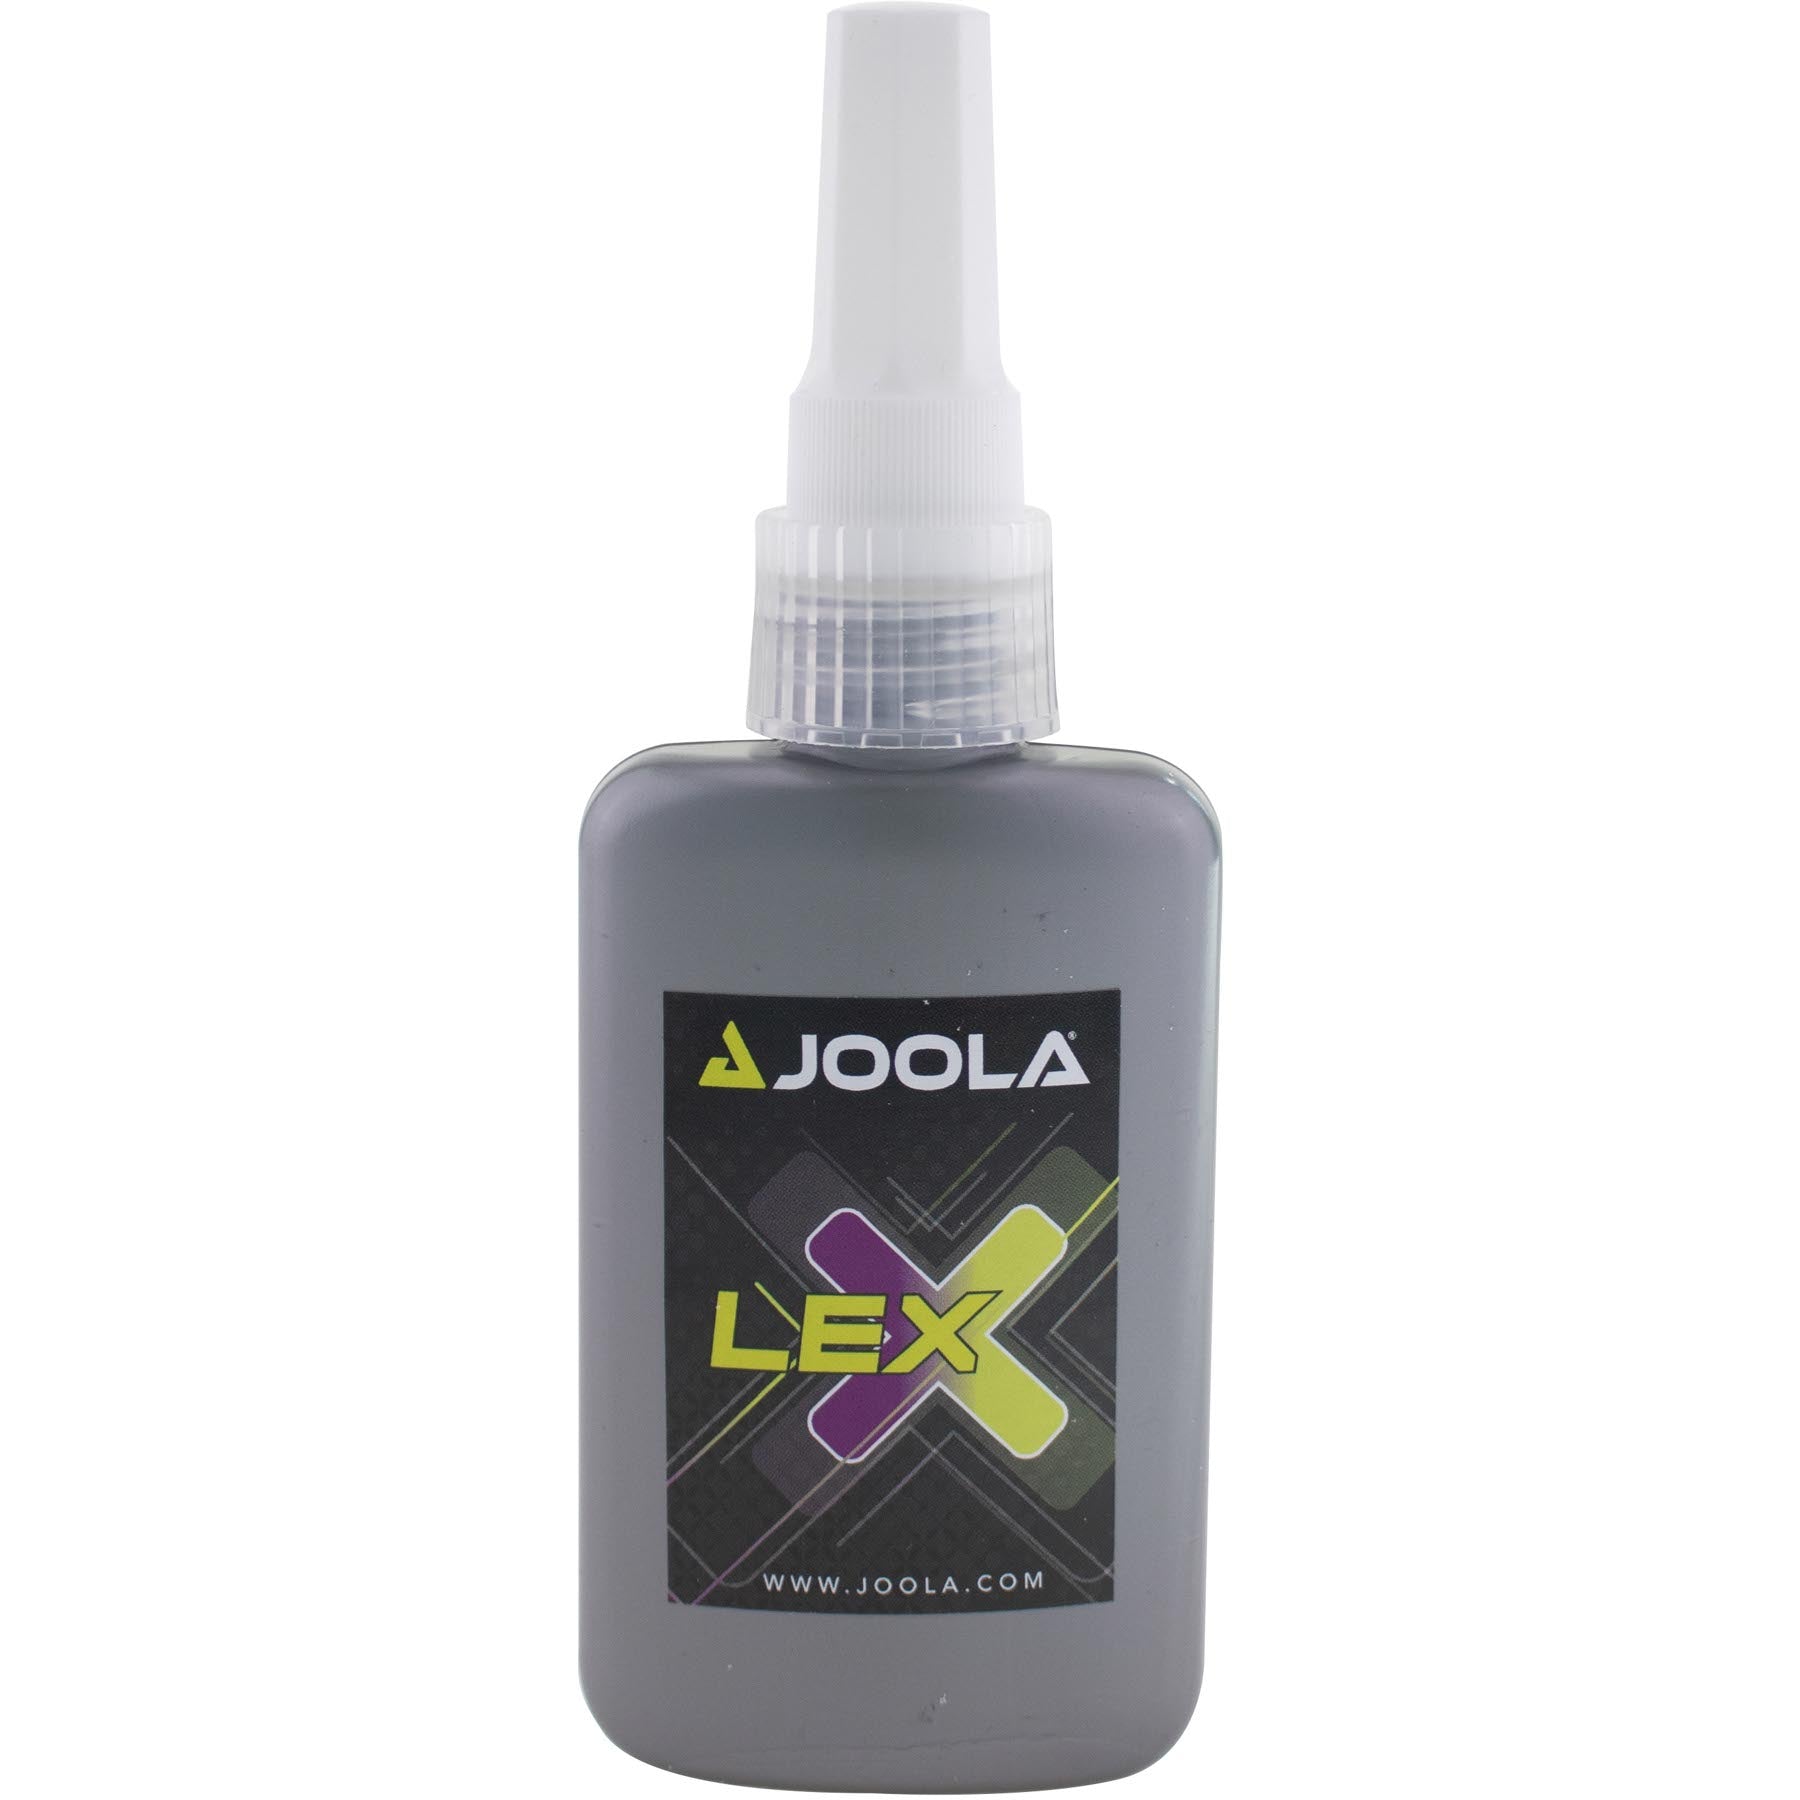 JOOLA LEX Green Power 95 g